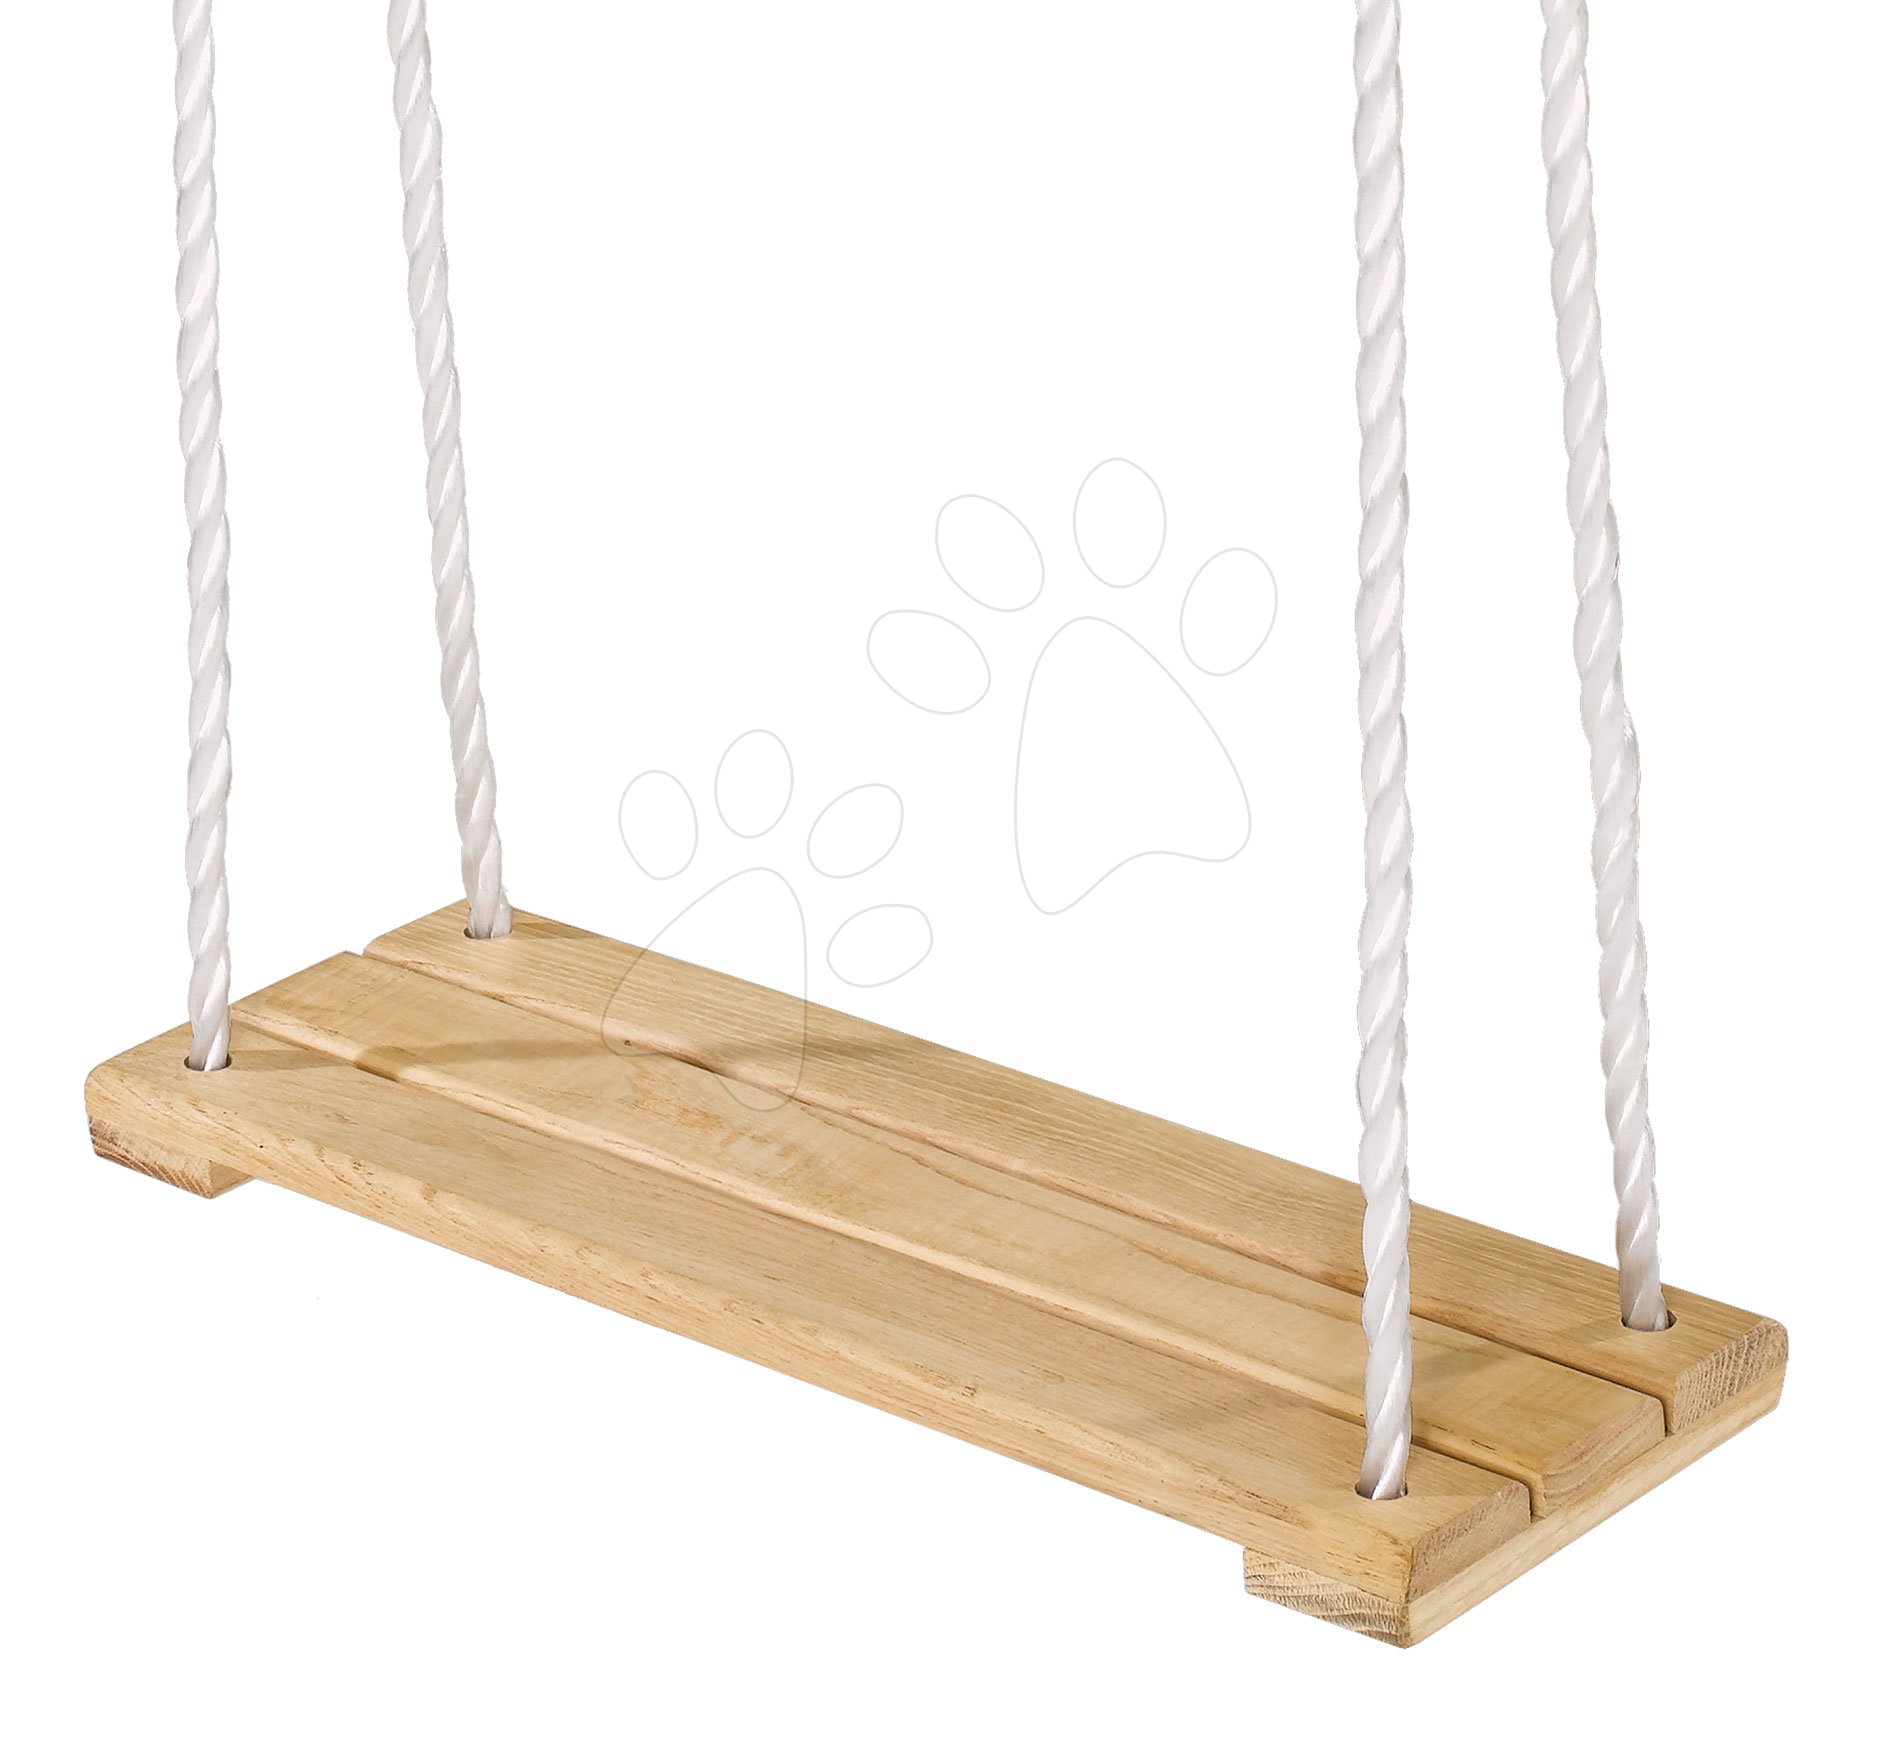 Gyerekhinták - Fa laphinta Plank Swing Outdoor Eichhorn natúr 140-210 cm hosszú 40*14 cm és 60 kg teherbirás 3 évtől